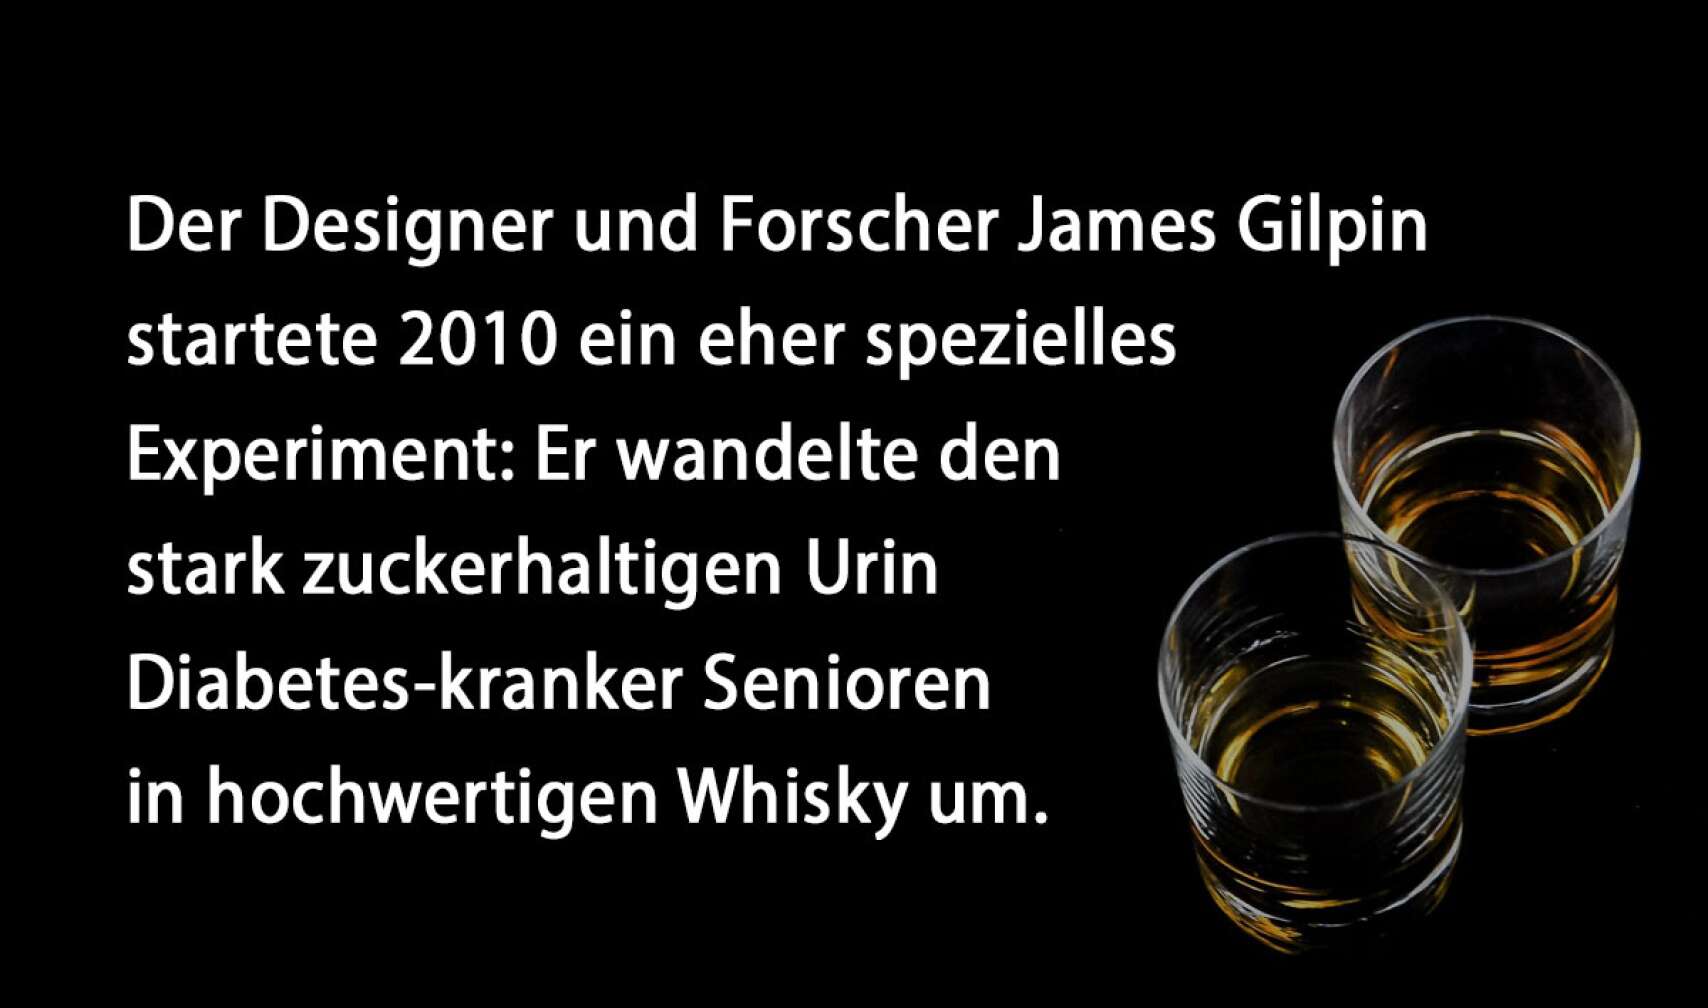 Der Designer und Forscher James Gilpin startete 2010 ein eher spezielles Experiment: Er wandelte den stark zuckerhaltigen Urin Diabetes-kranker Senioren in hochwertigen Whisky um.